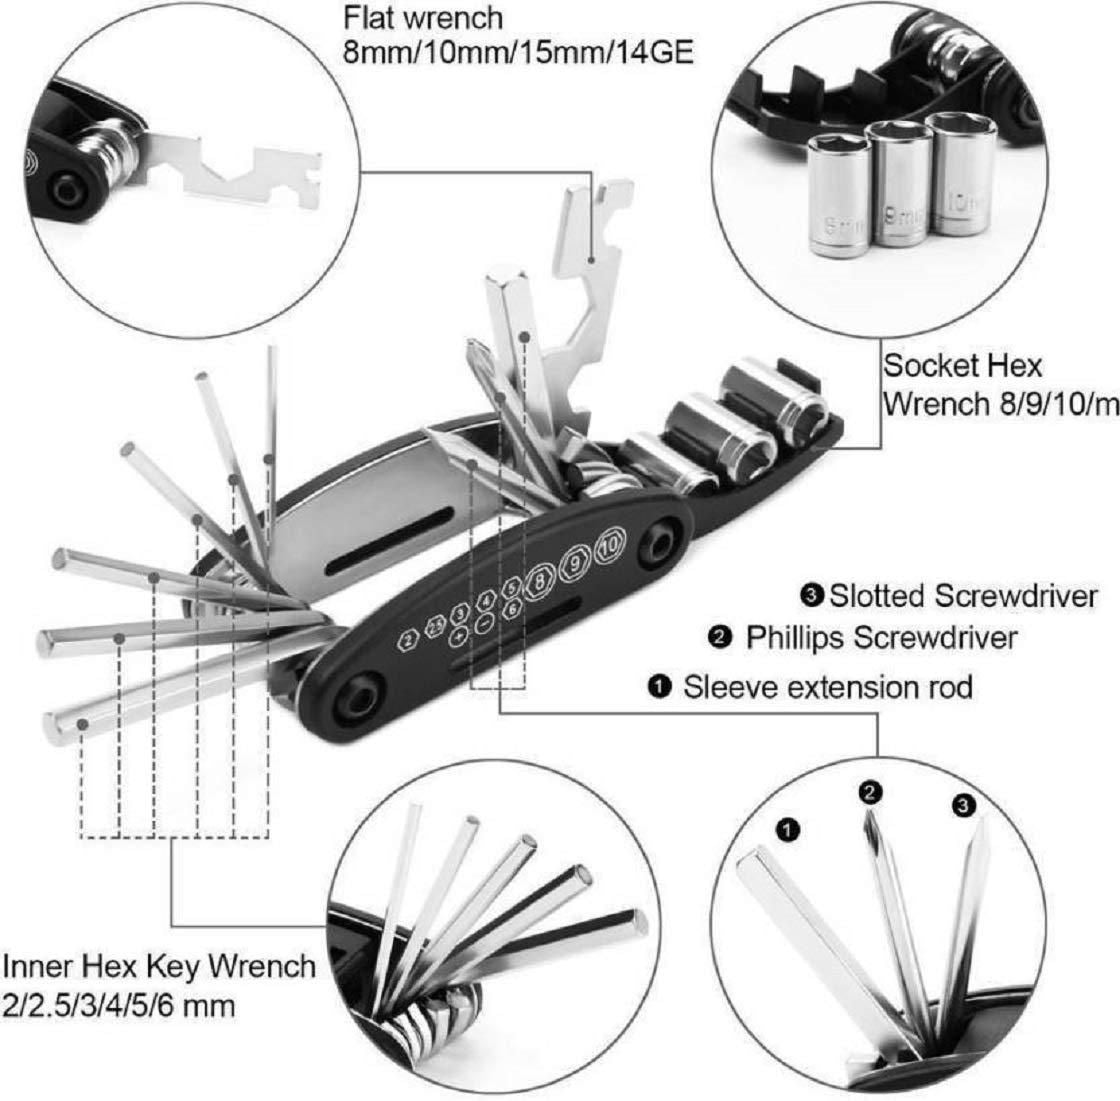 15-in-1 Repair Tool Multifunctional Kit Tool